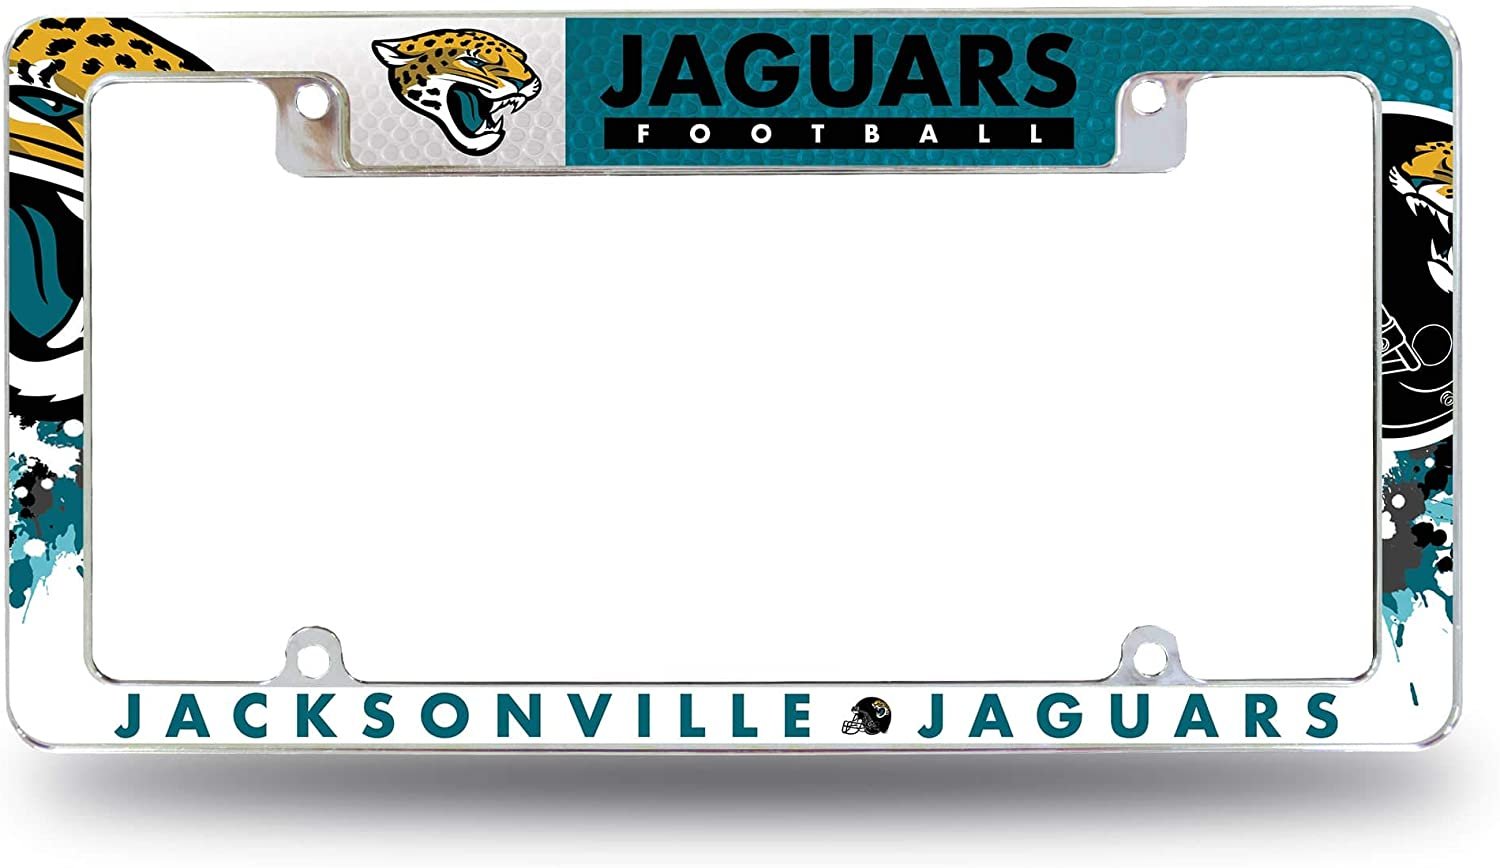 Jacksonville Jaguars Metal License Plate Frame Tag Cover All Over Design Heavy Gauge